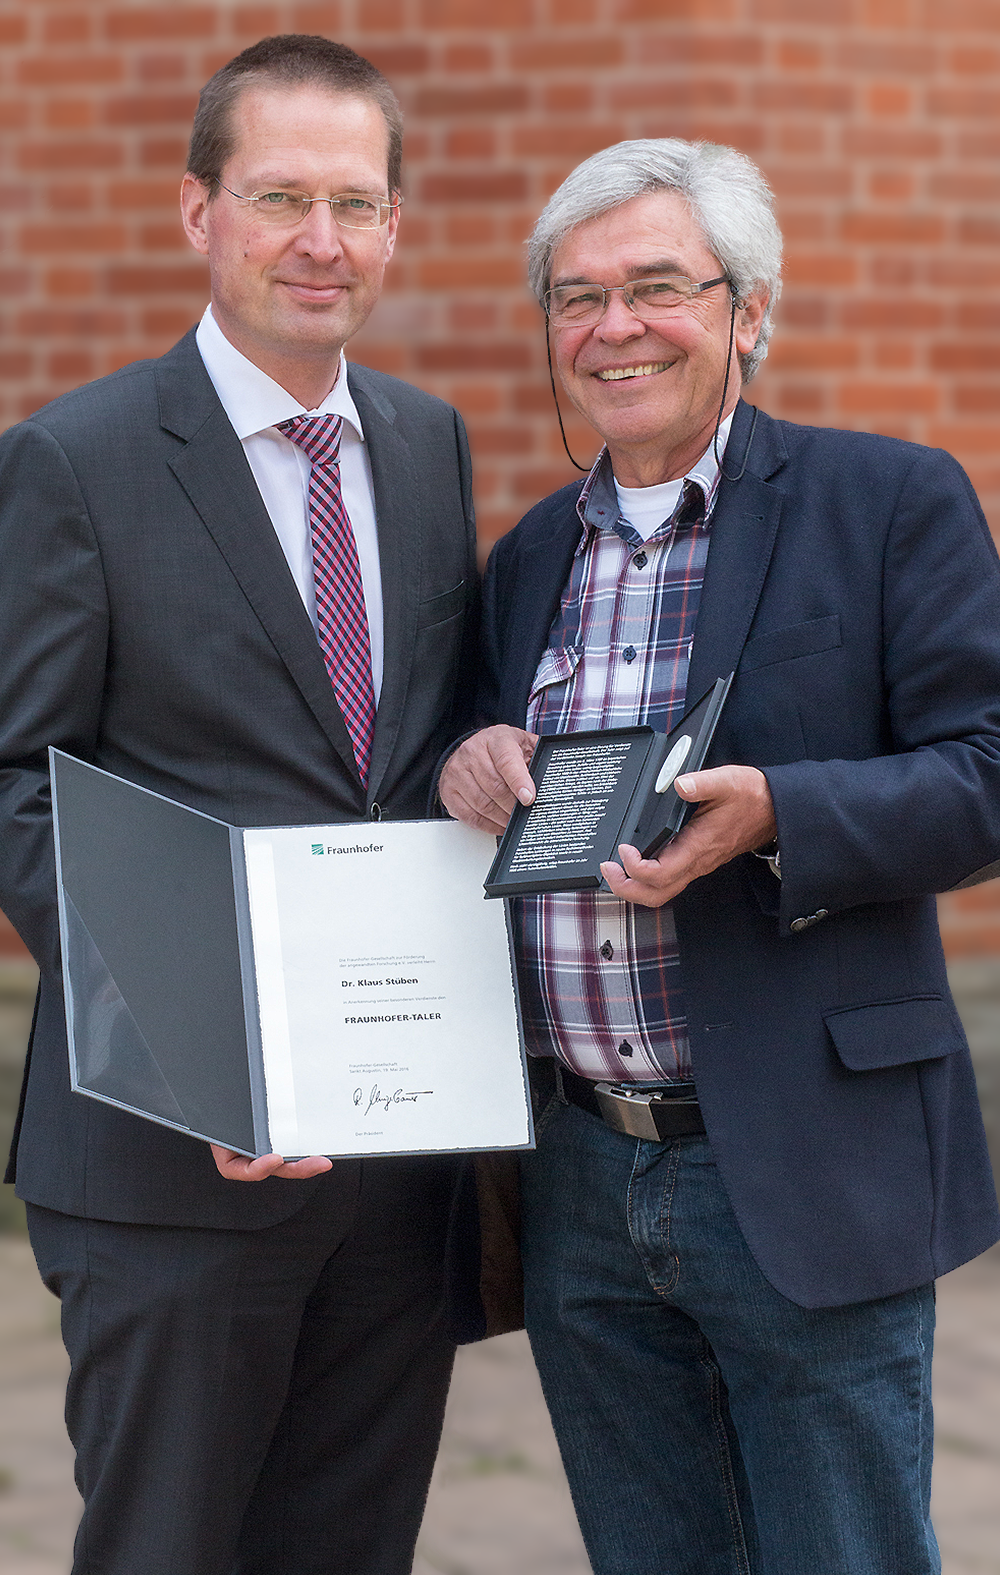 SCAI-Forscher Dr. Klaus Stüben hat in Anerkennung seiner Verdienste um die Fraunhofer-Gesellschaft den Fraunhofer-Taler erhalten